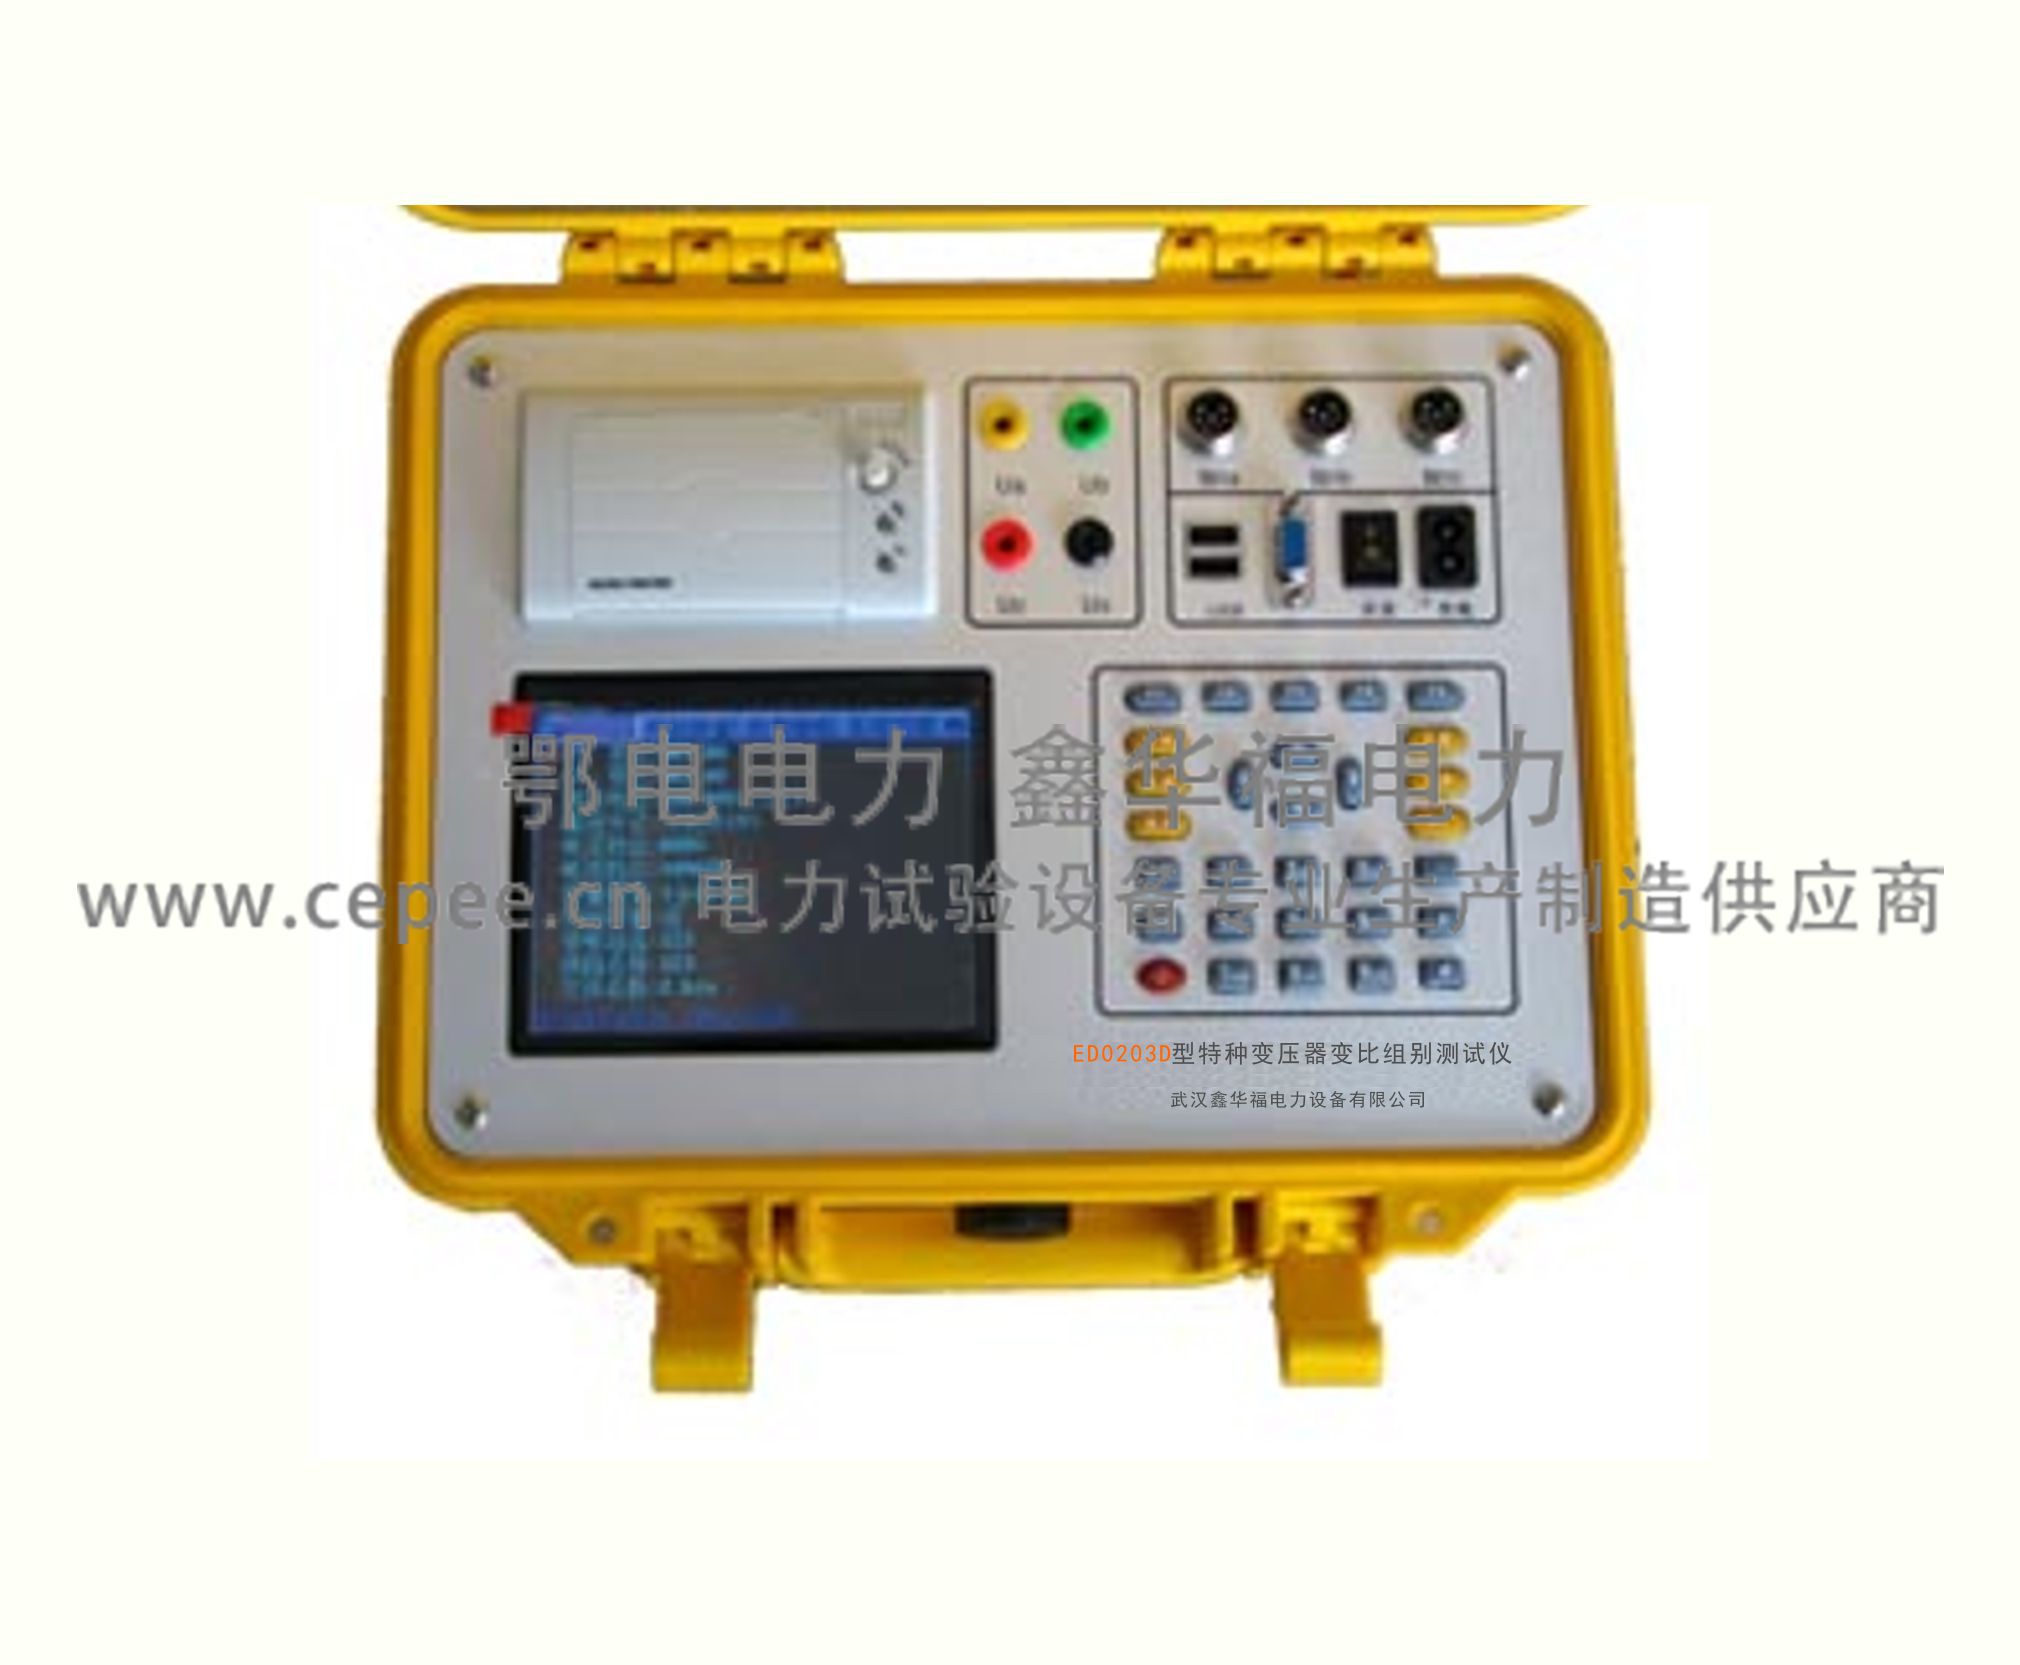 ZSDDG-8000全自动大电流发生器_五金、工具-武汉鄂电电力试验设备有限公司